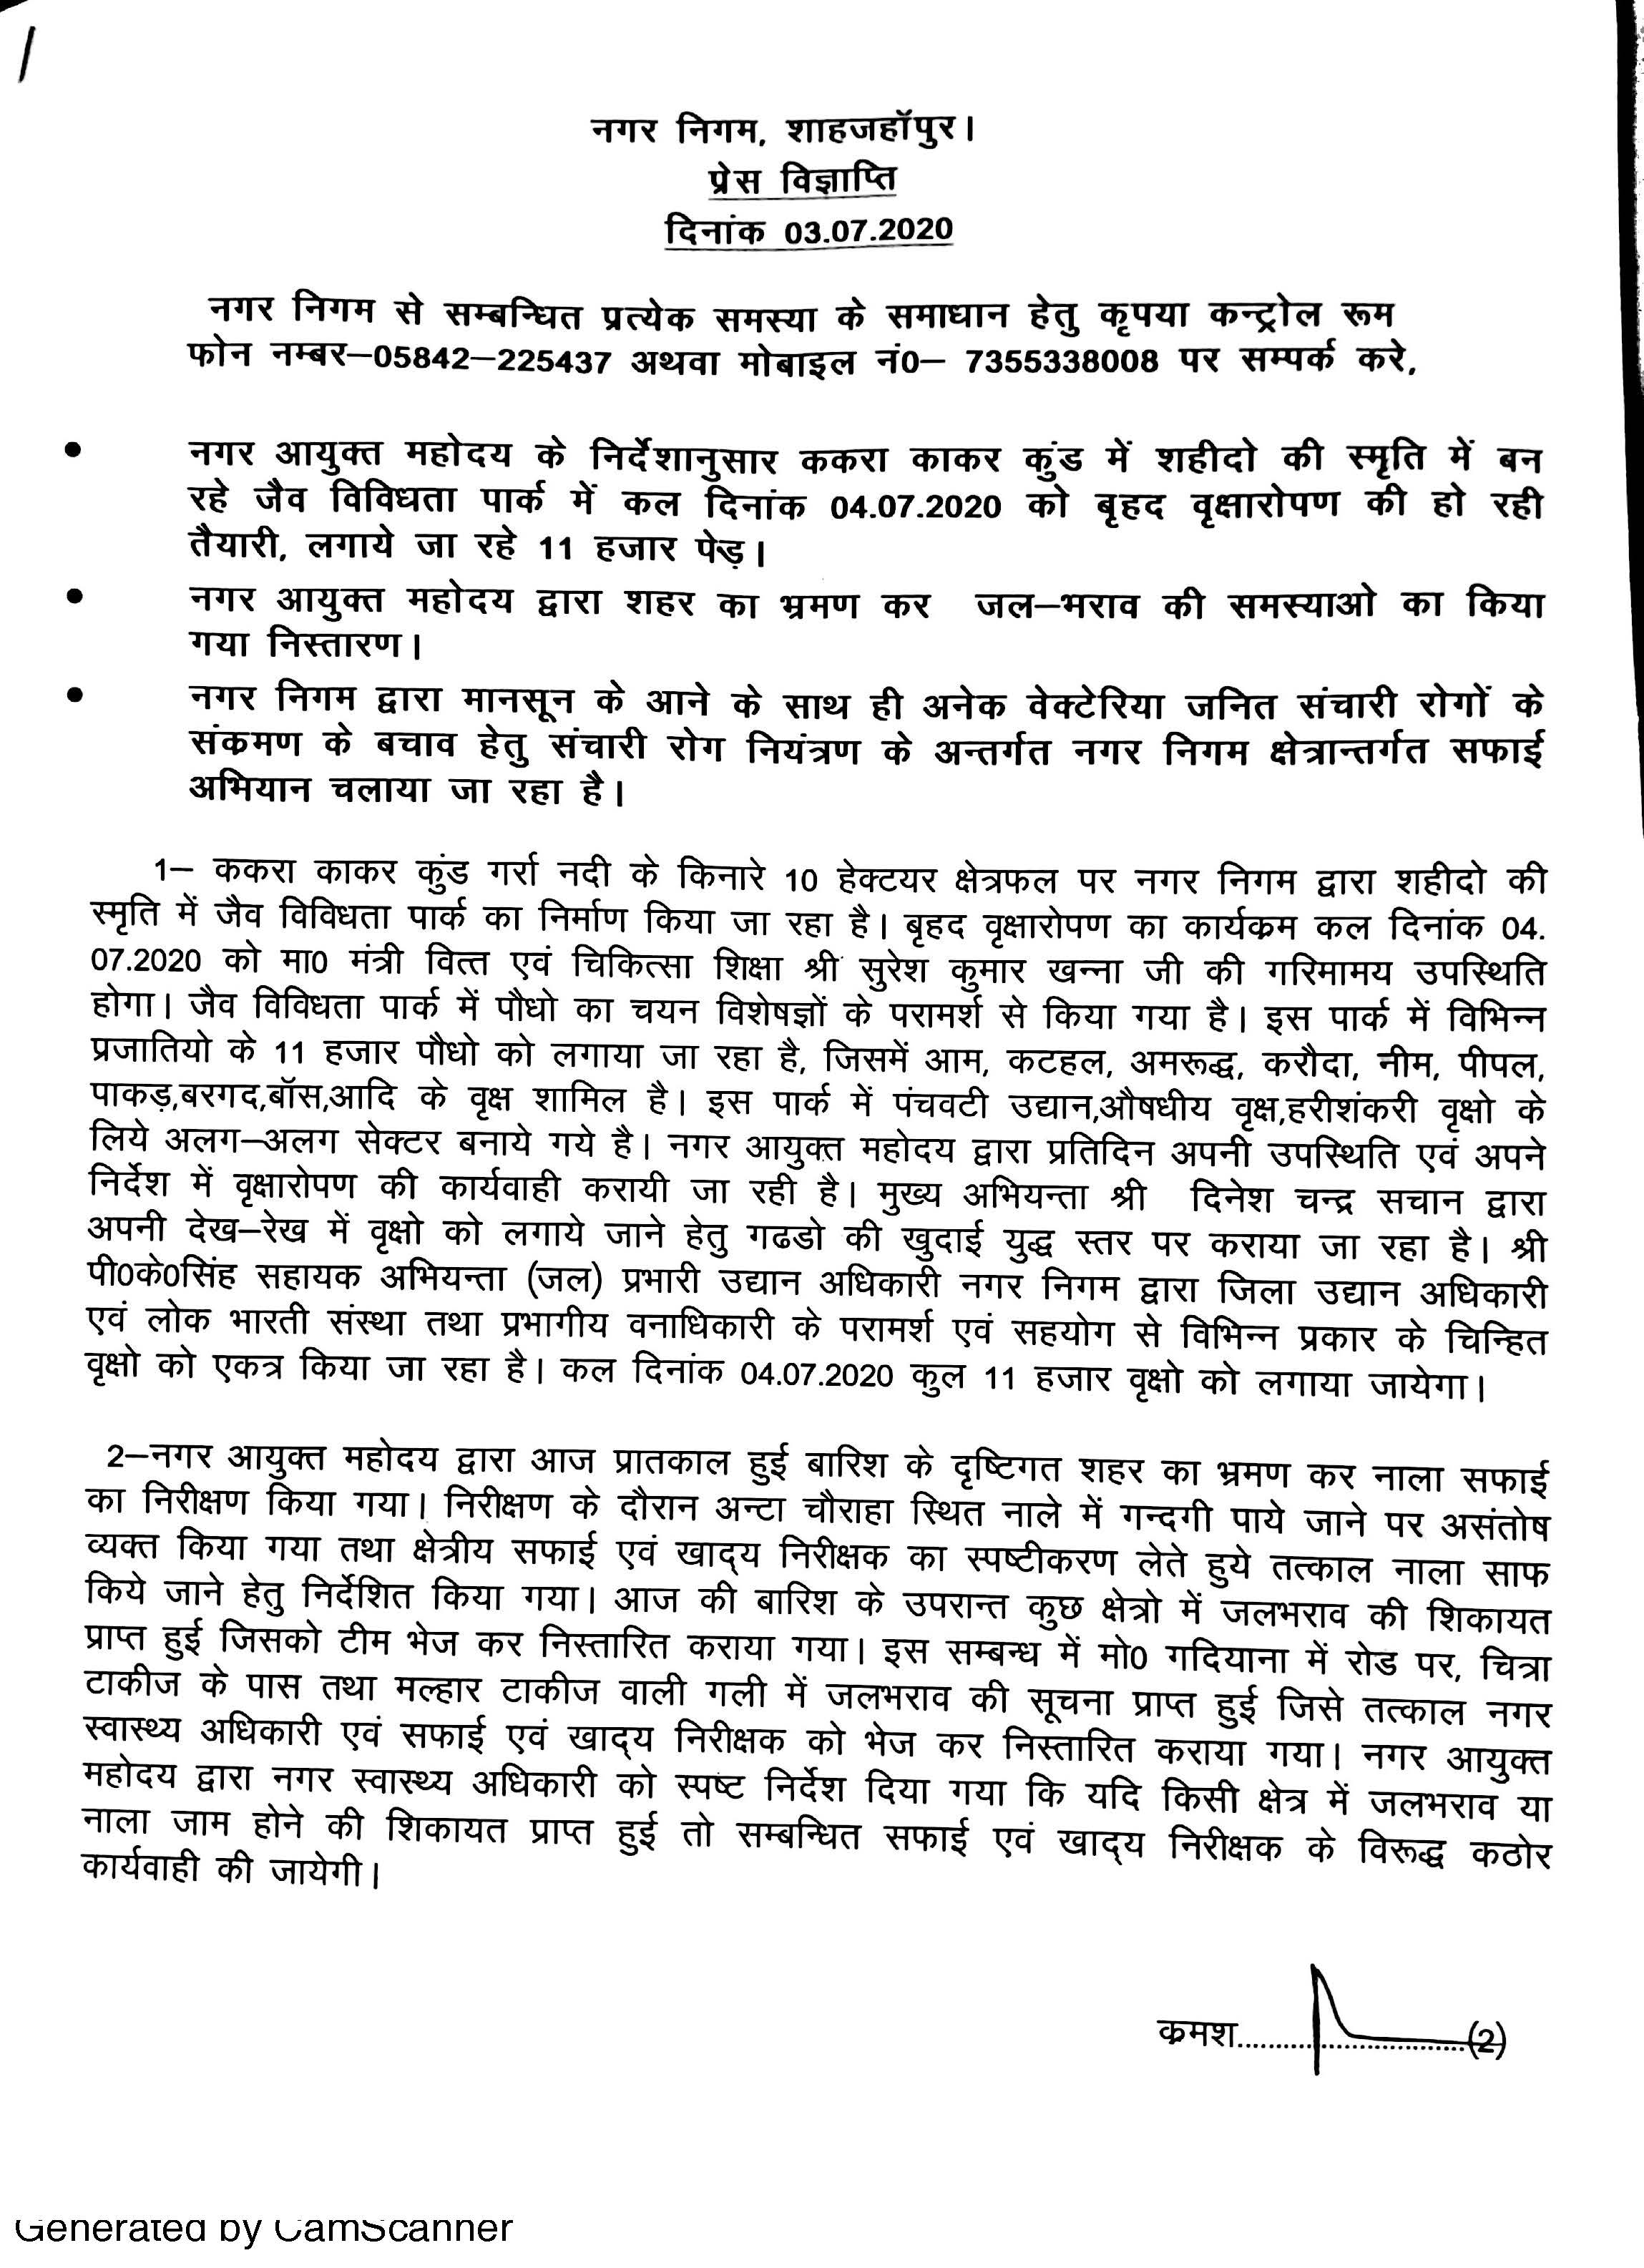 दिनांक 4-7-2020 को माननीय मंत्री वित्त एवं चिकित्सा शिक्षा श्री सुरेश कुमार खन्ना जी की गरिमामयी उपस्थिति  में जैव विविधता पार्क में वृक्षारोपण किए जाने हेतु जारी प्रेस विज्ञप्ति के संबंध में